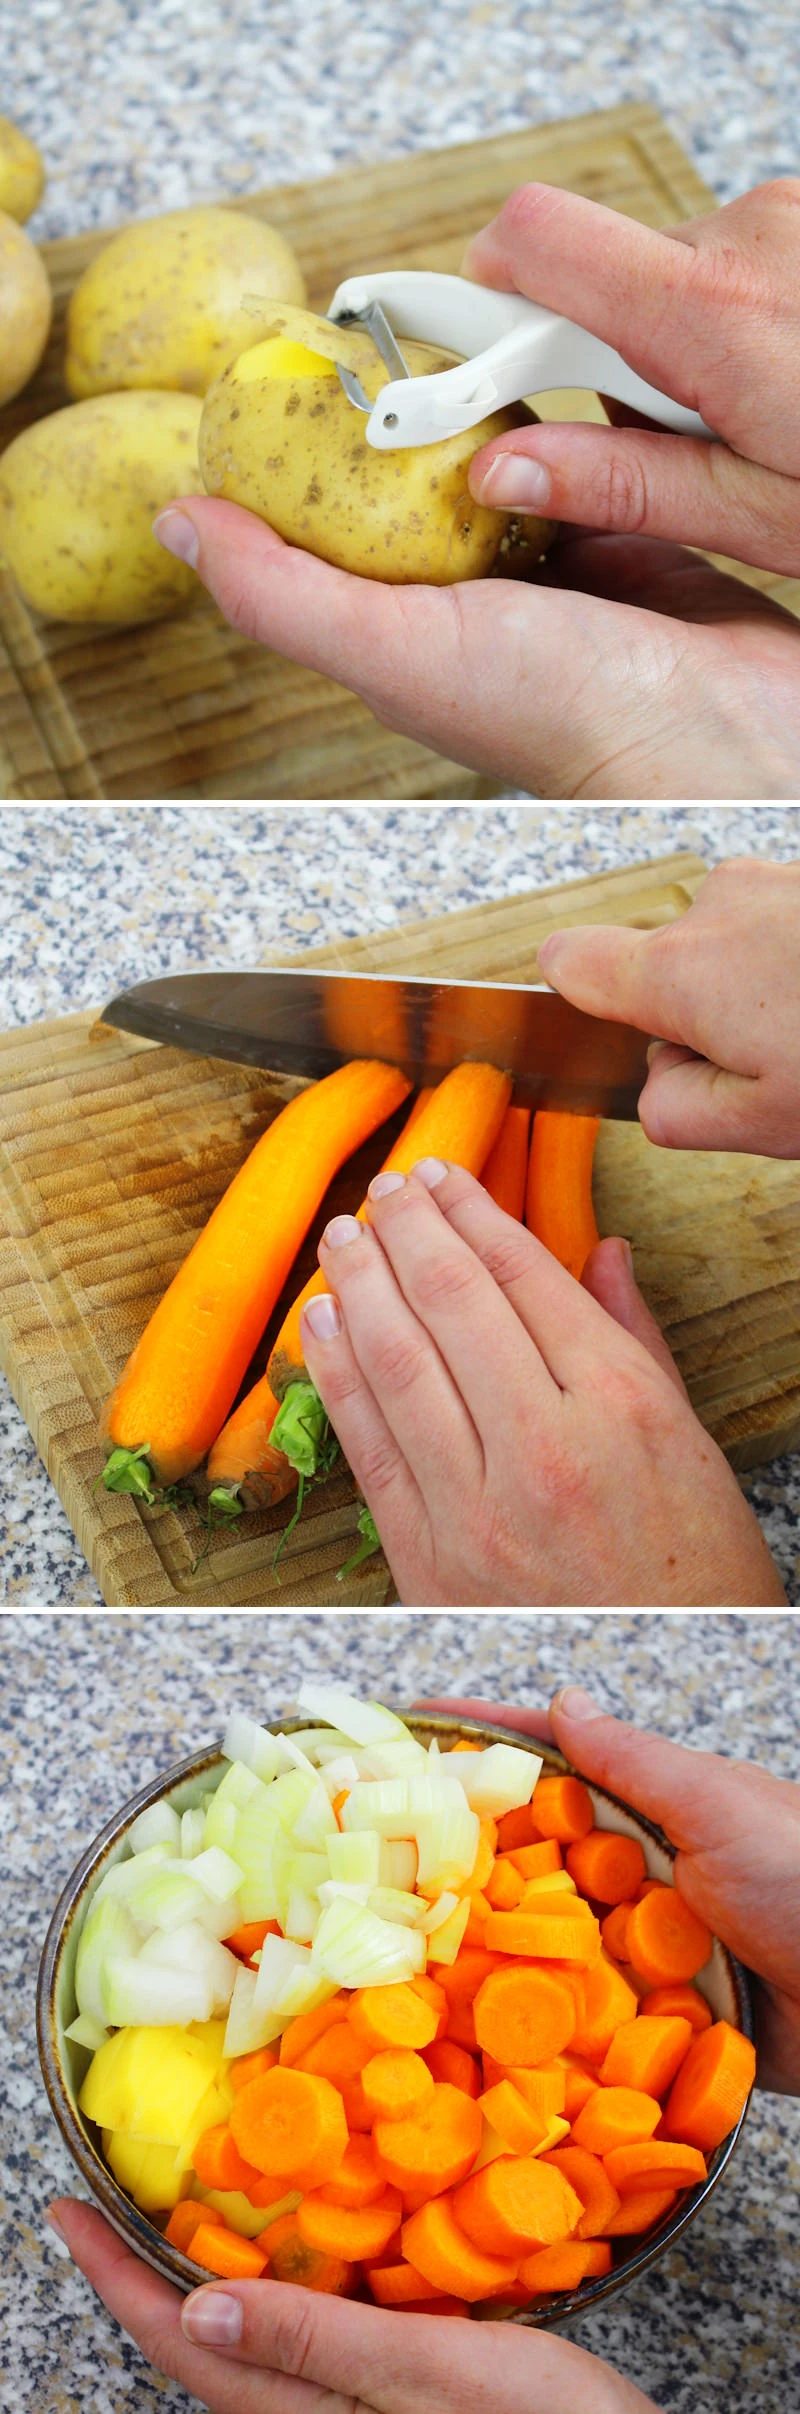 Curry Pan Schritt 6 Gemüse schneiden